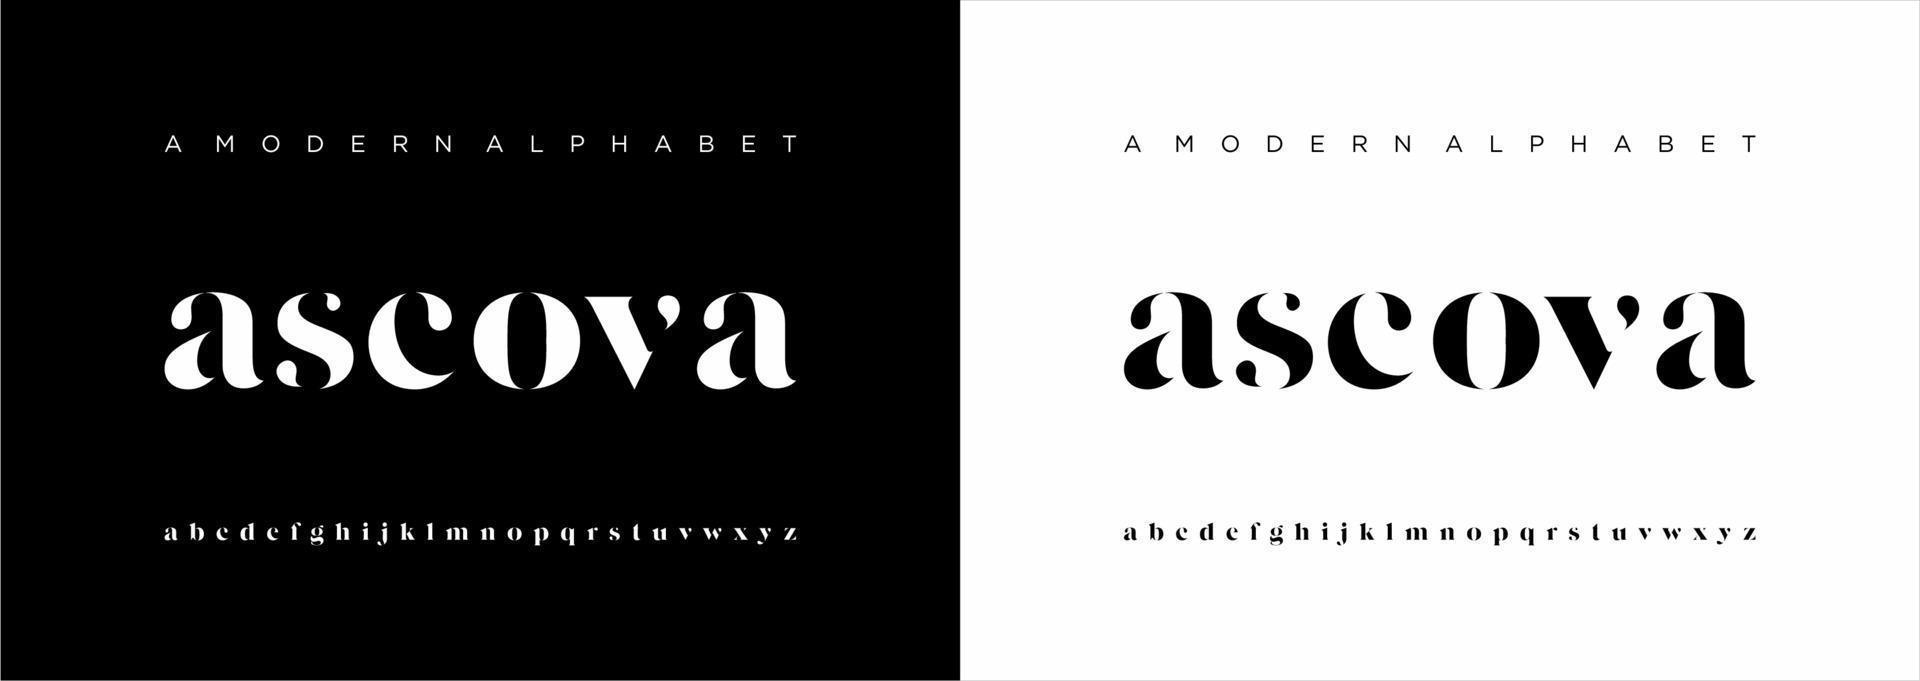 elegante fuente de letras del alfabeto moderno. Diseños de moda minimalista con letras clásicas. tipografía moderna serif fuentes regulares vector